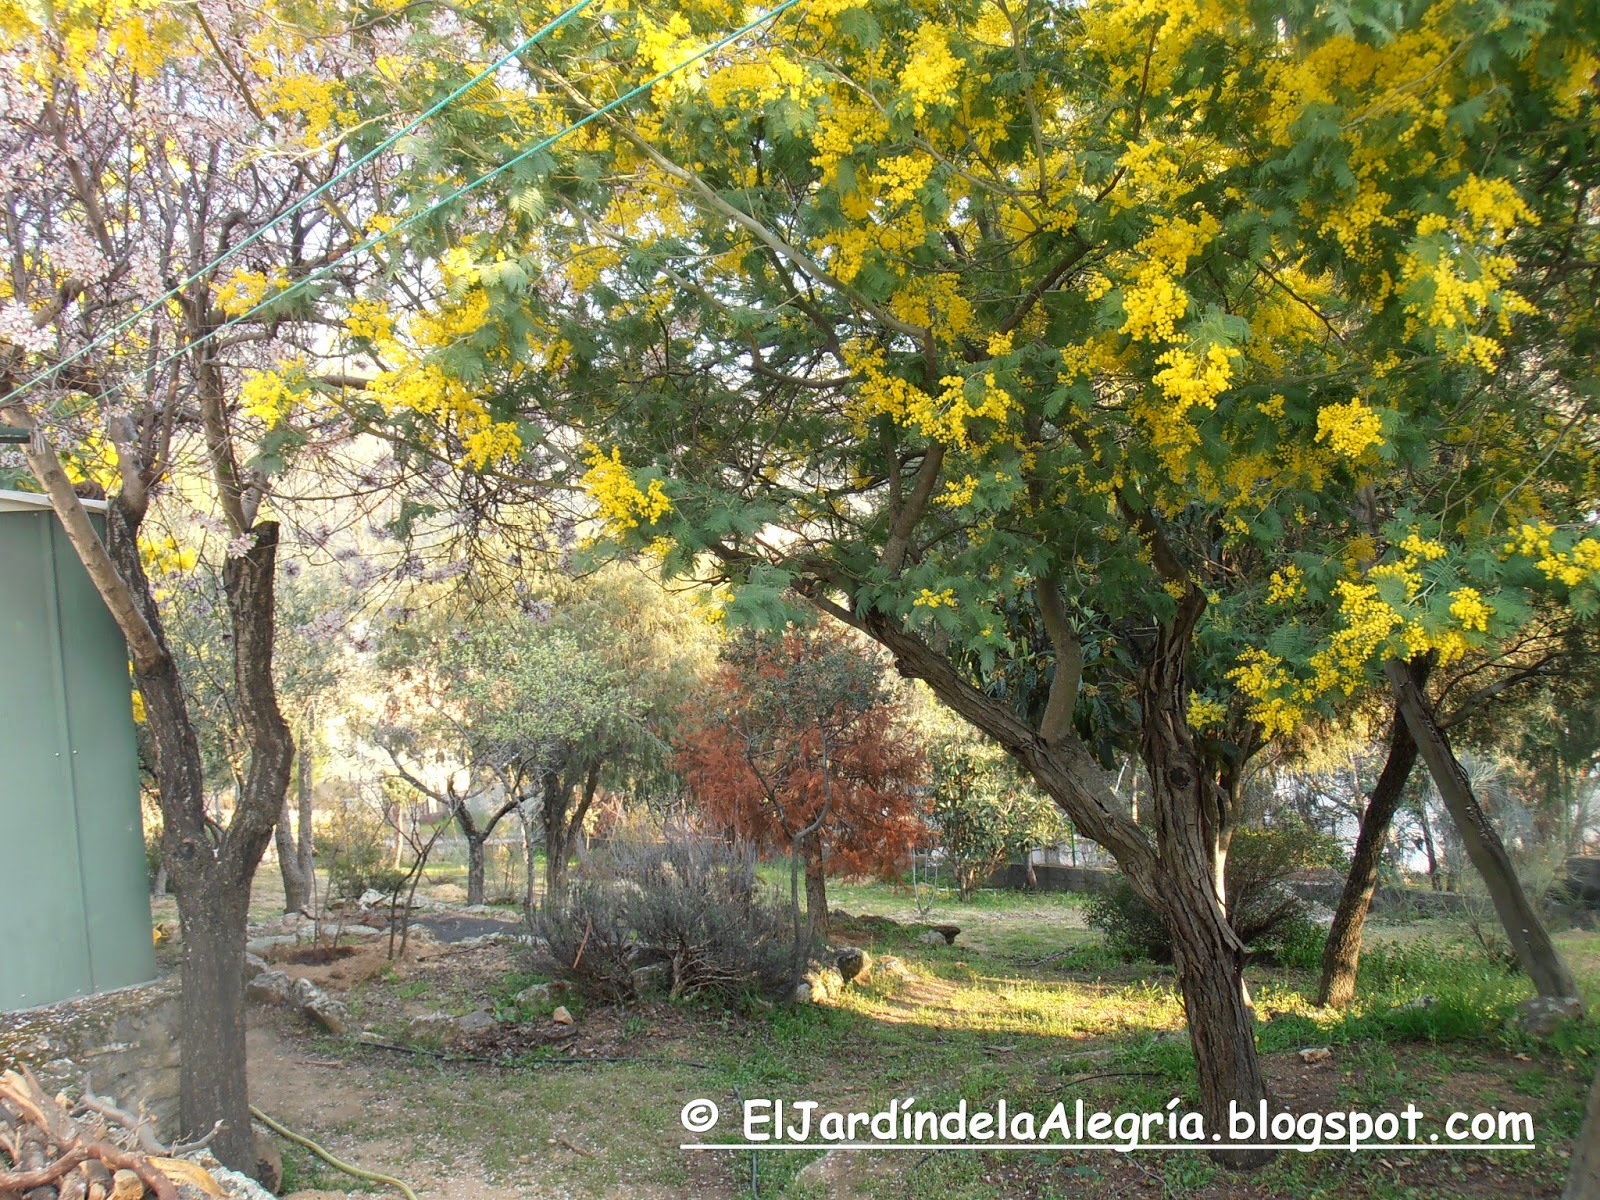 El jardín de la alegría : Muchas mimosas y un almendro en flor